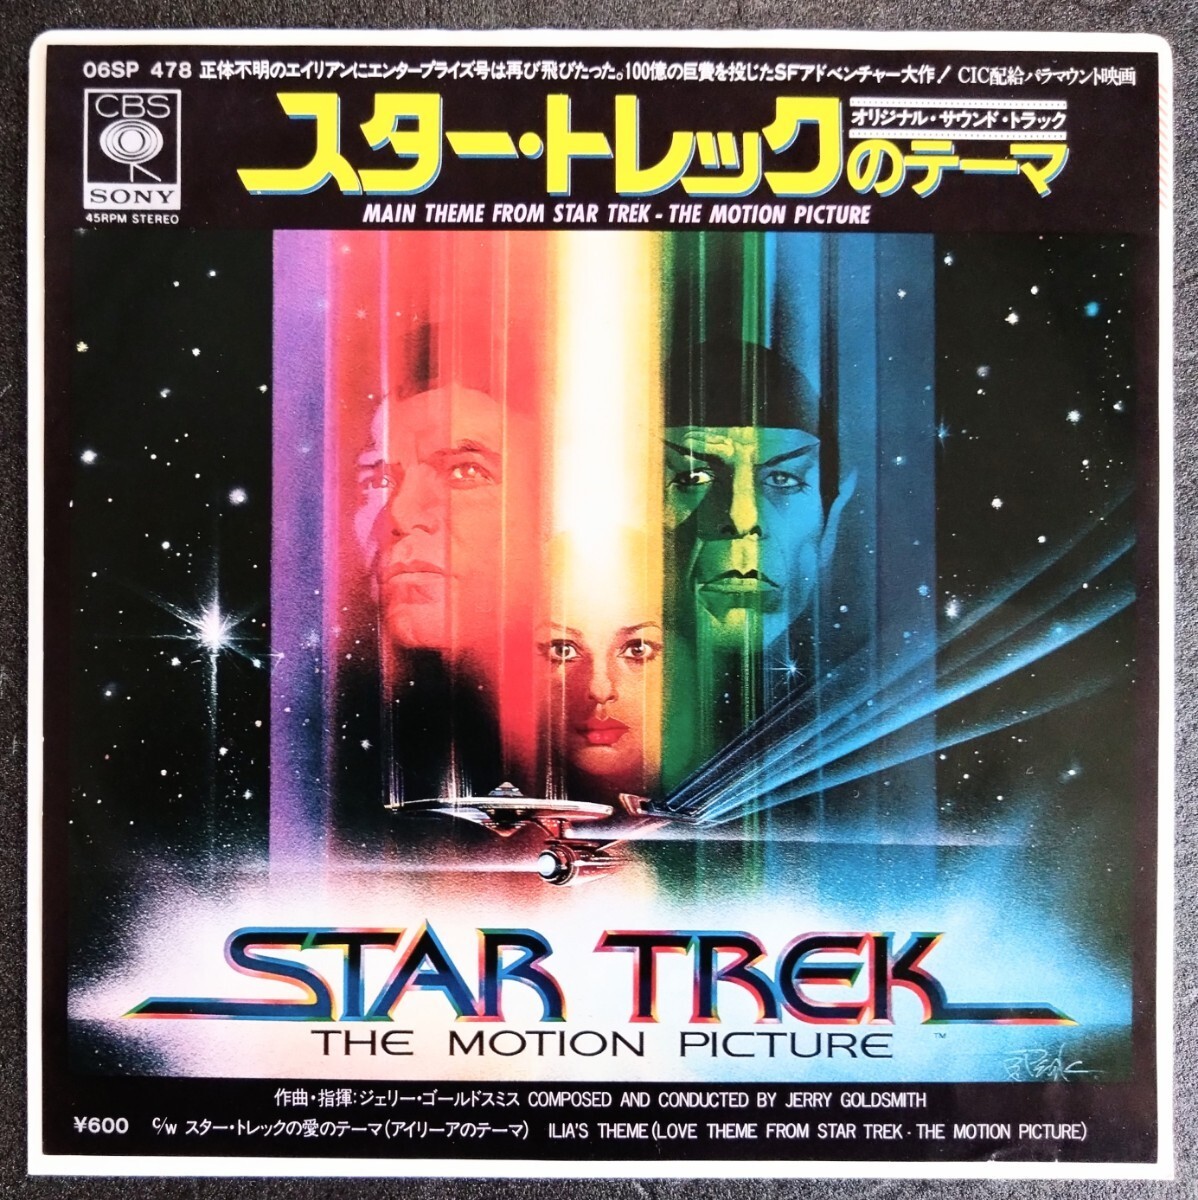 EP* запись [ Star * Trek ] подлинная вещь фильм саундтрек запись. постановка : Robert * wise...: William * Shatner.R*nimoi.1979 год произведение 